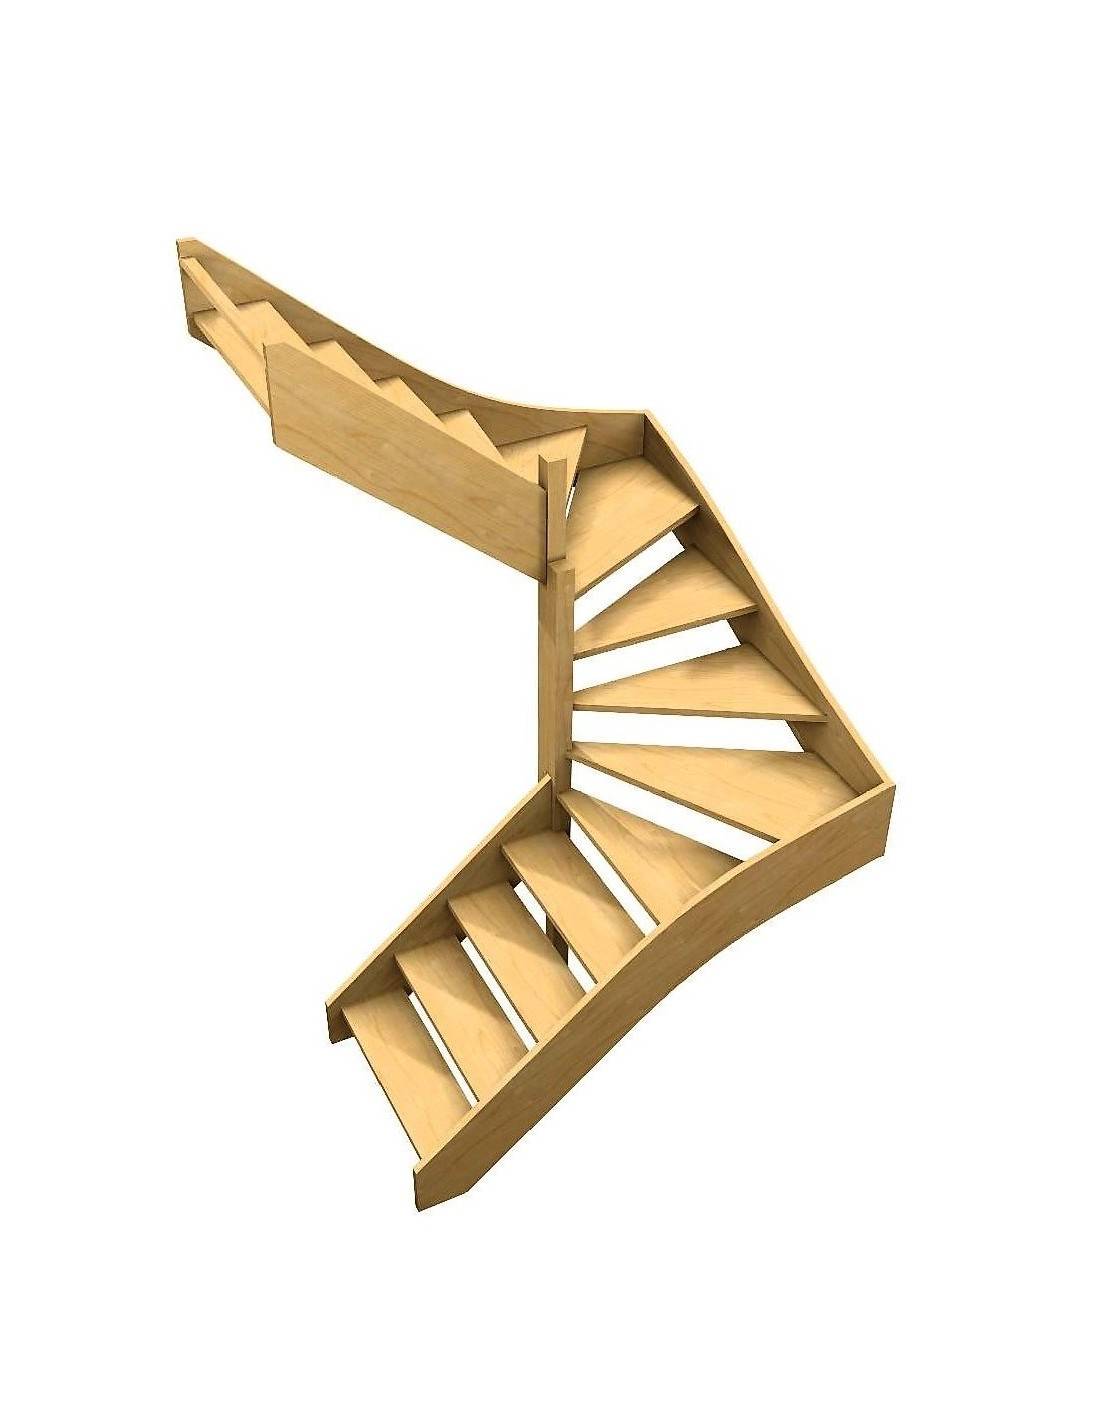 Escalier escamotable métal sans rampe de haute qualité